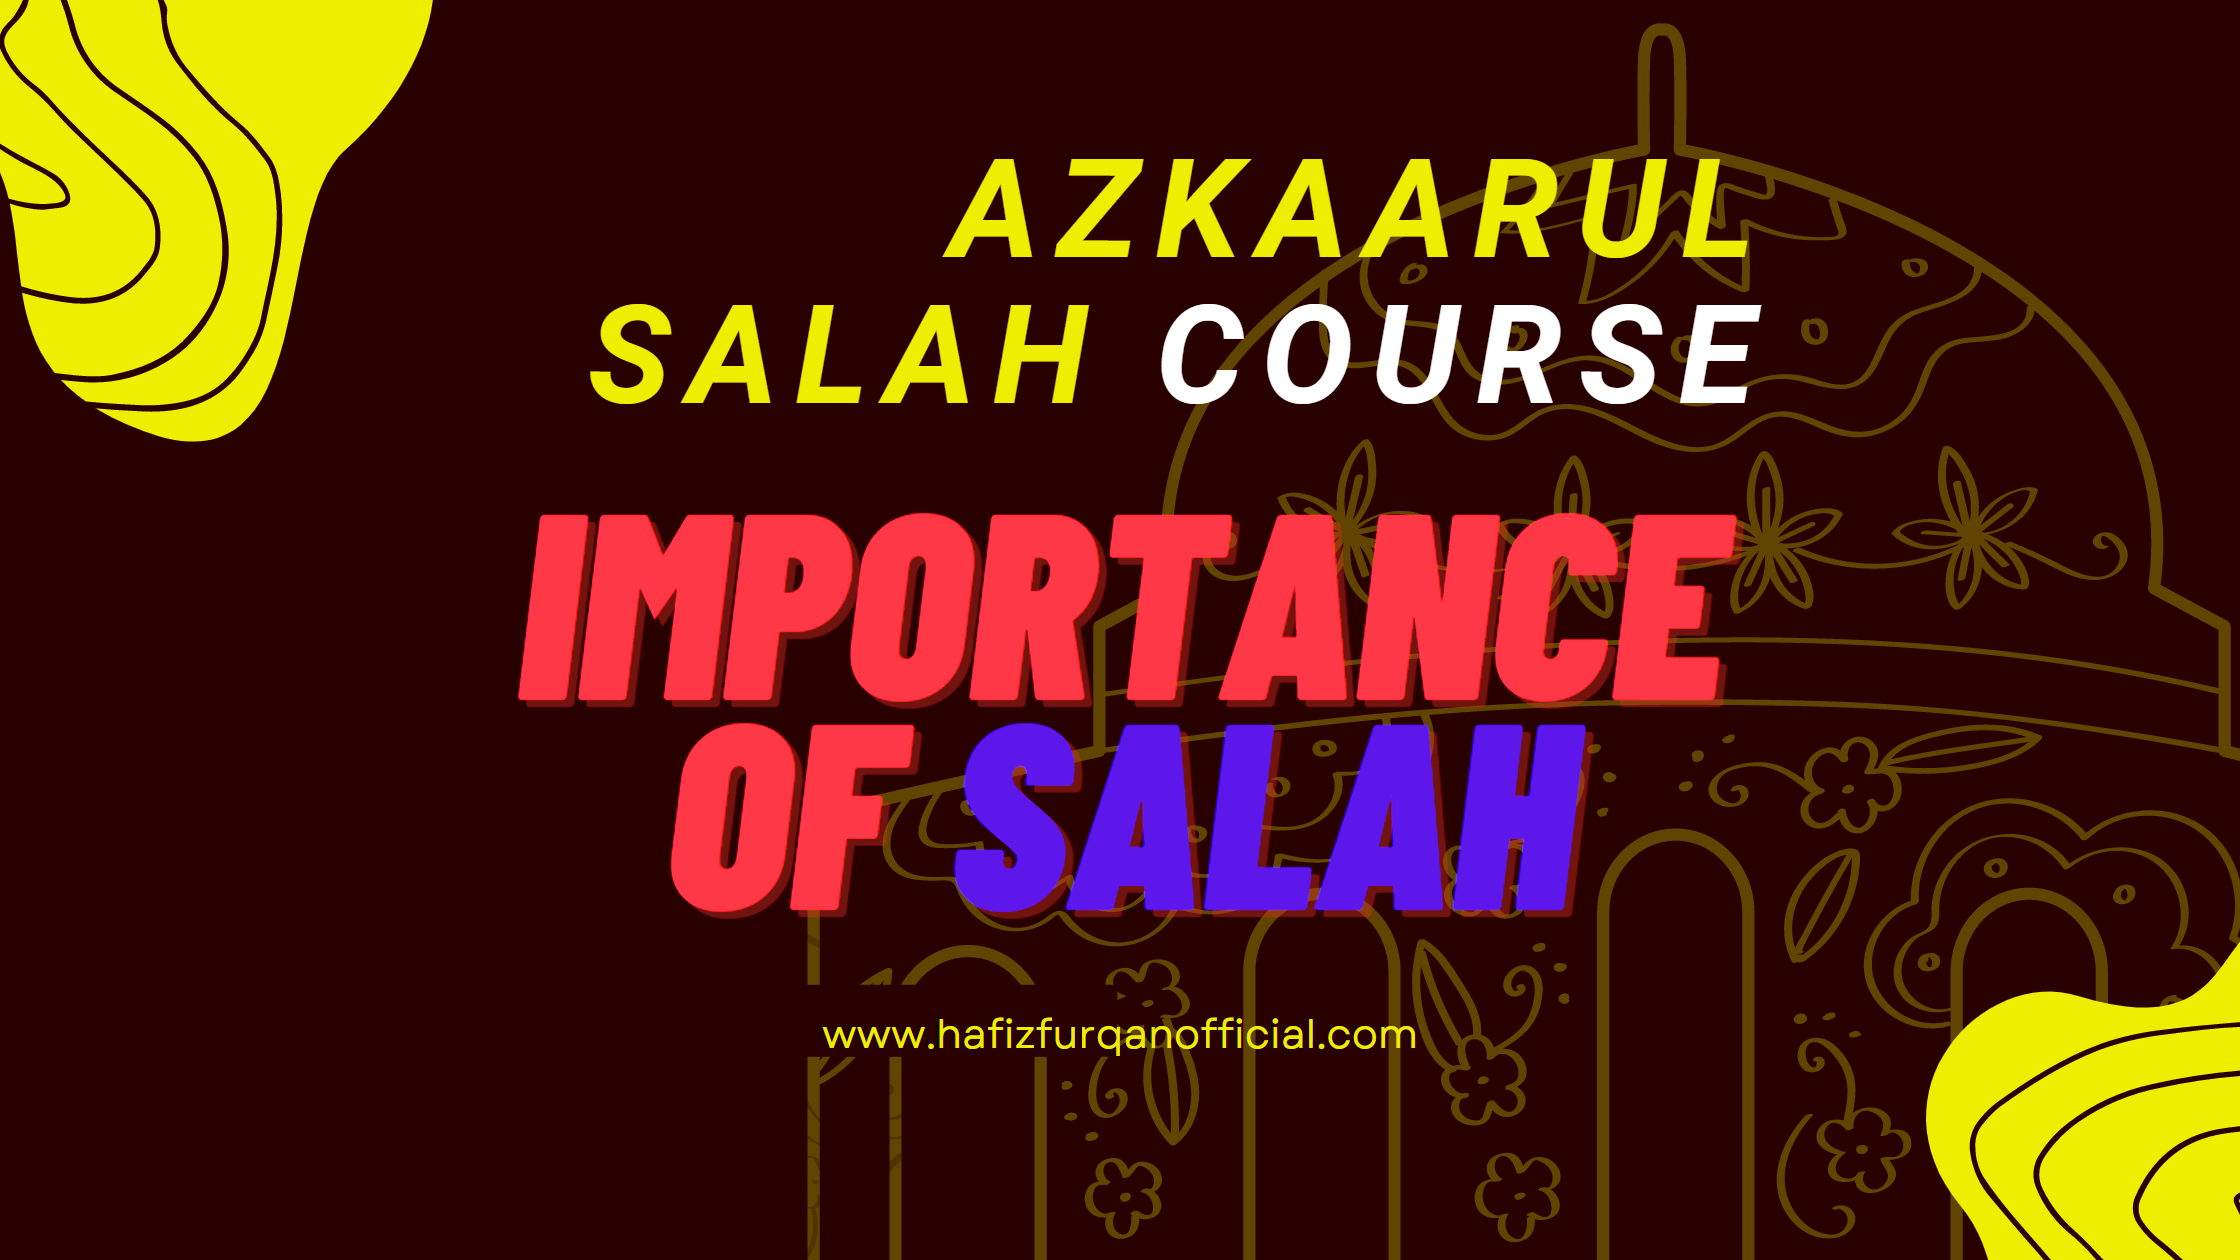 Importance of Salah